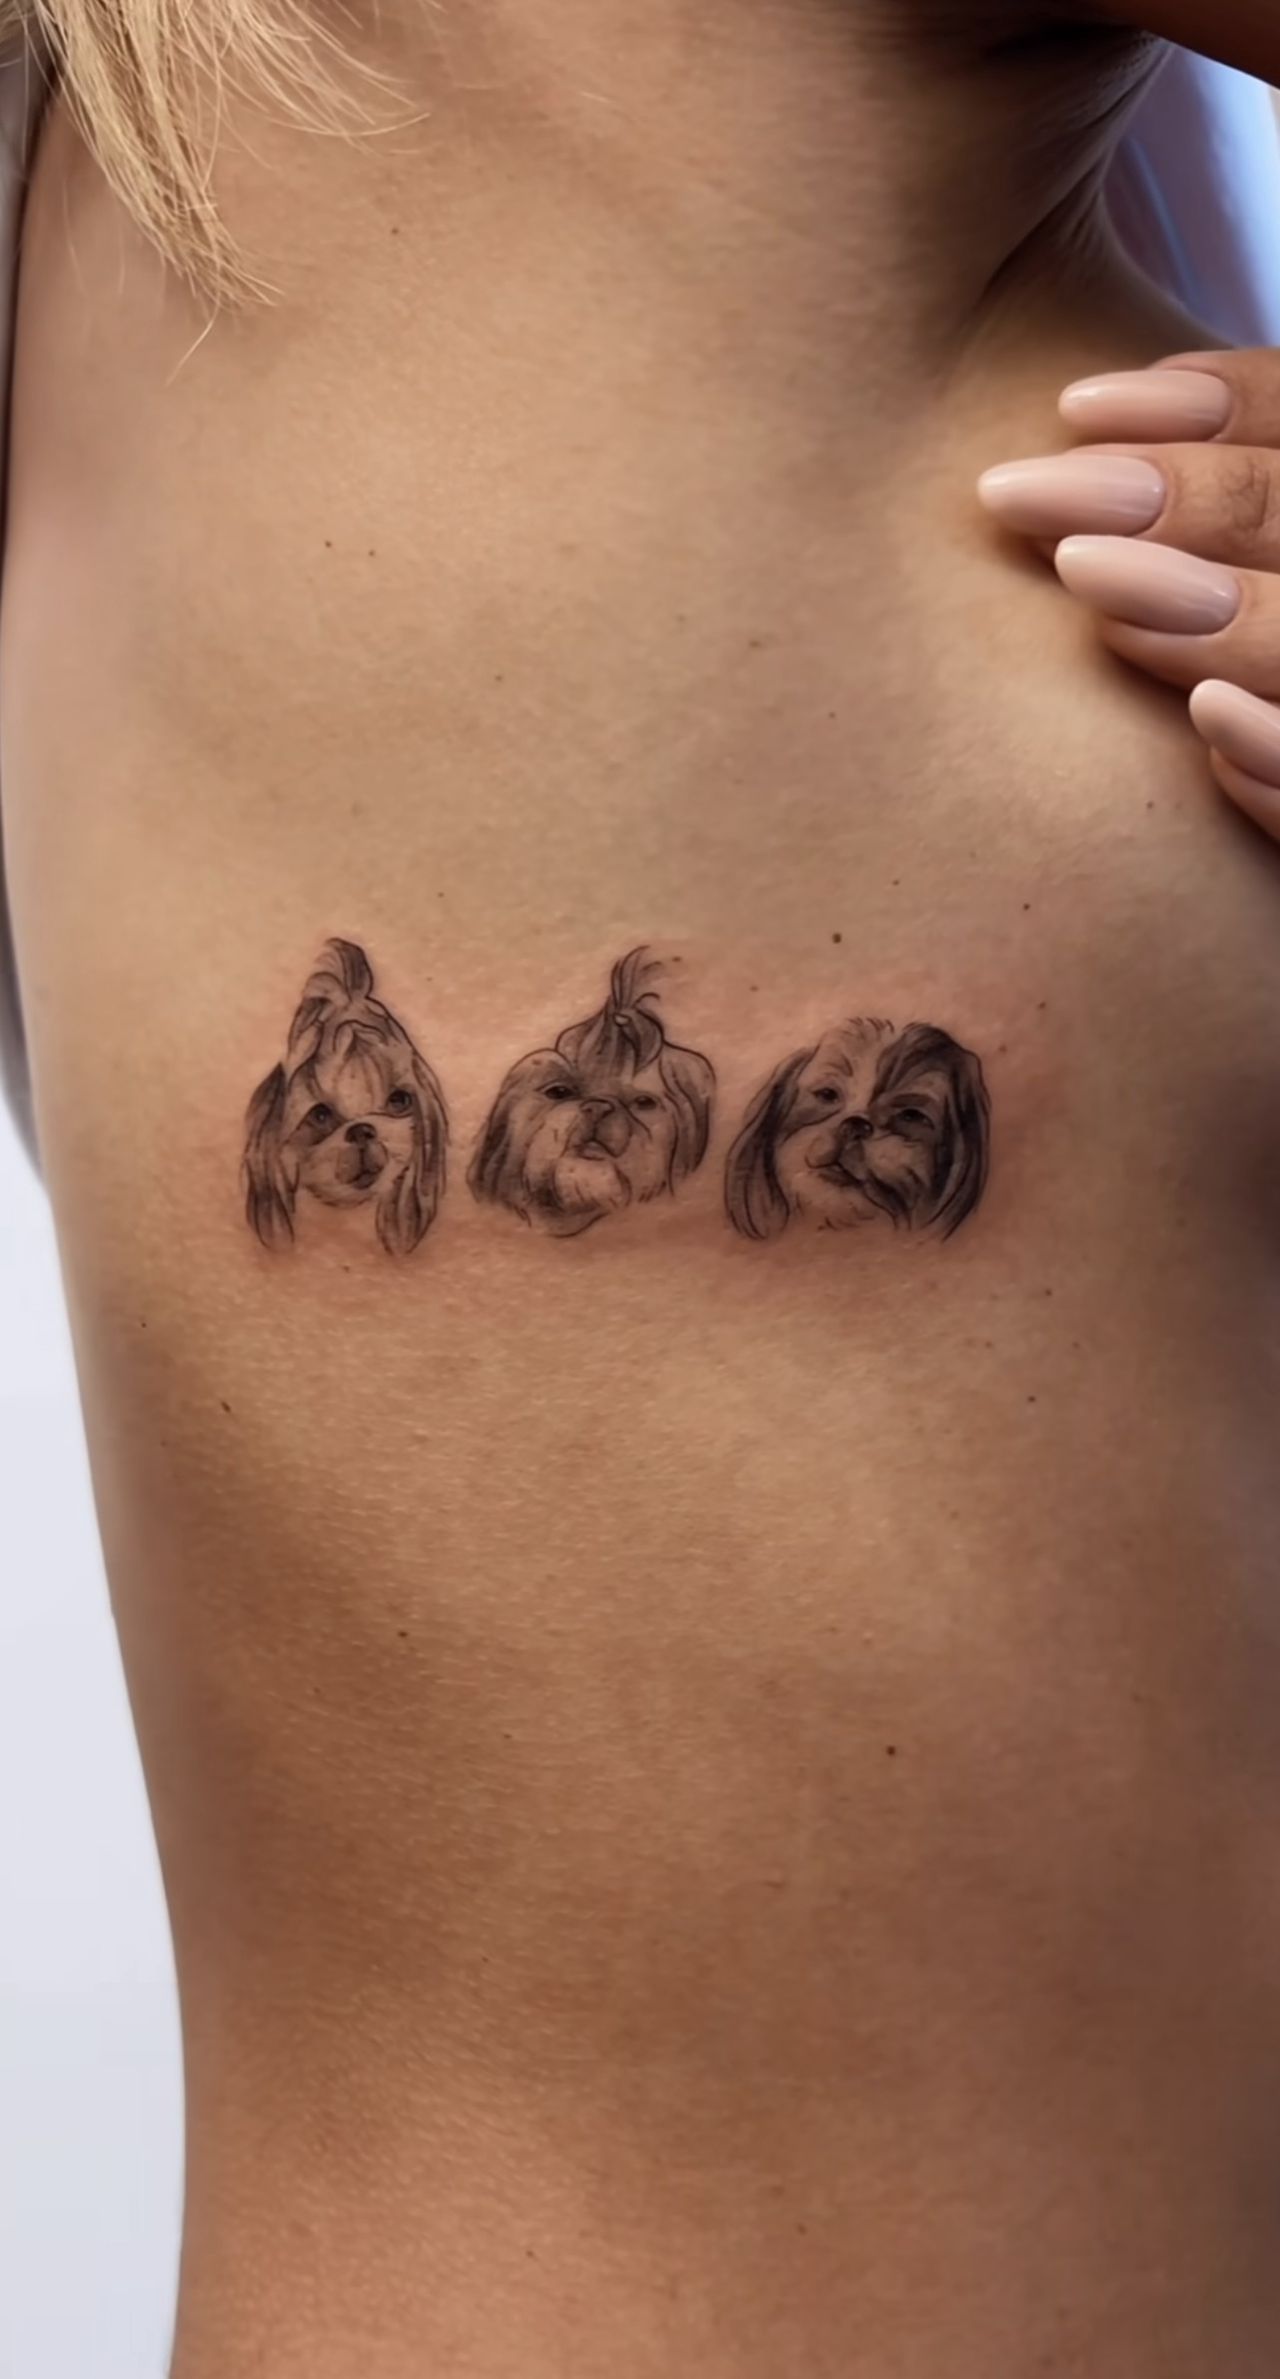 Sandra Kubicka i jej nowy tatuaż z motywem psów
Instagram/sandrakubicka